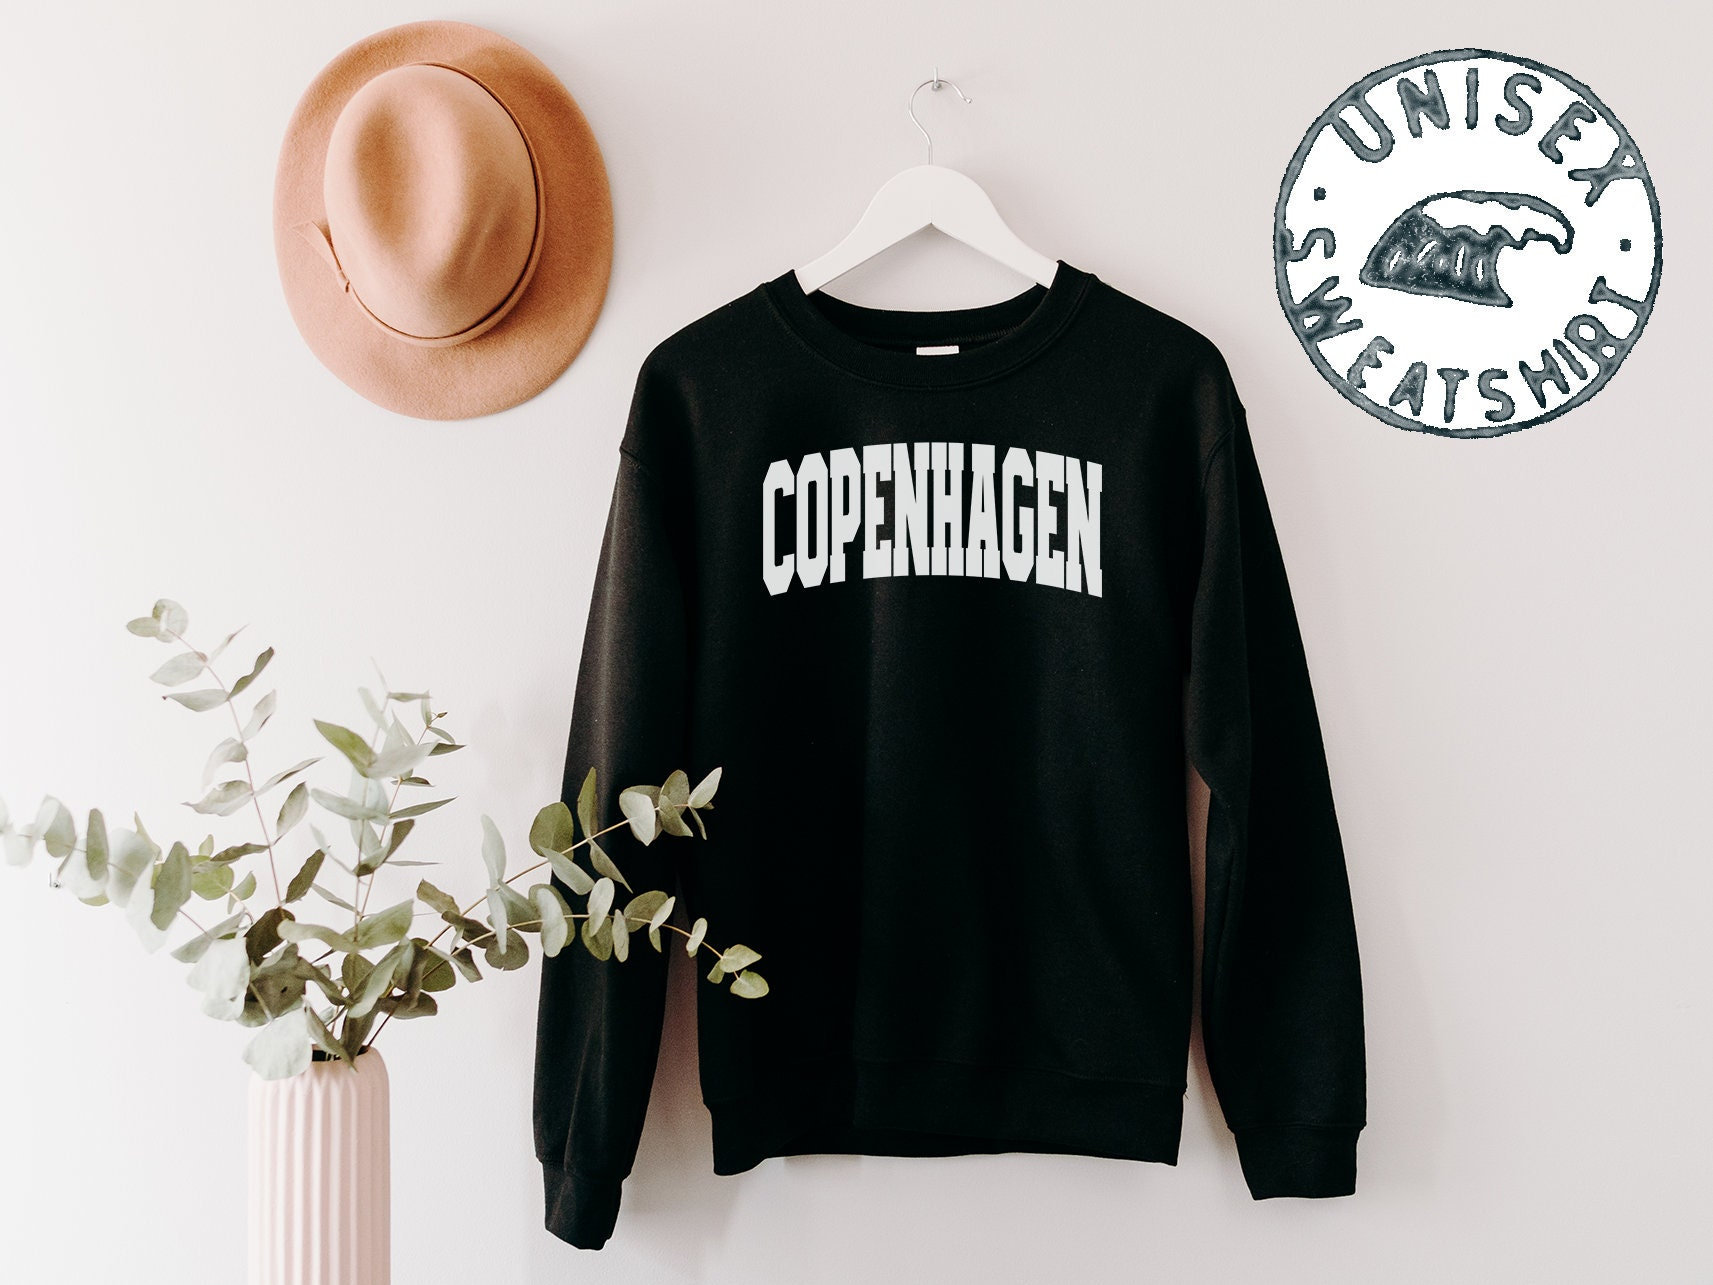 Kopenhagen Dänemark Umzug Sweatshirt, Lustige Pullover Shirt, Geburtstagsgeschenke Für Männer Und Frauen von 22ndOfOctober